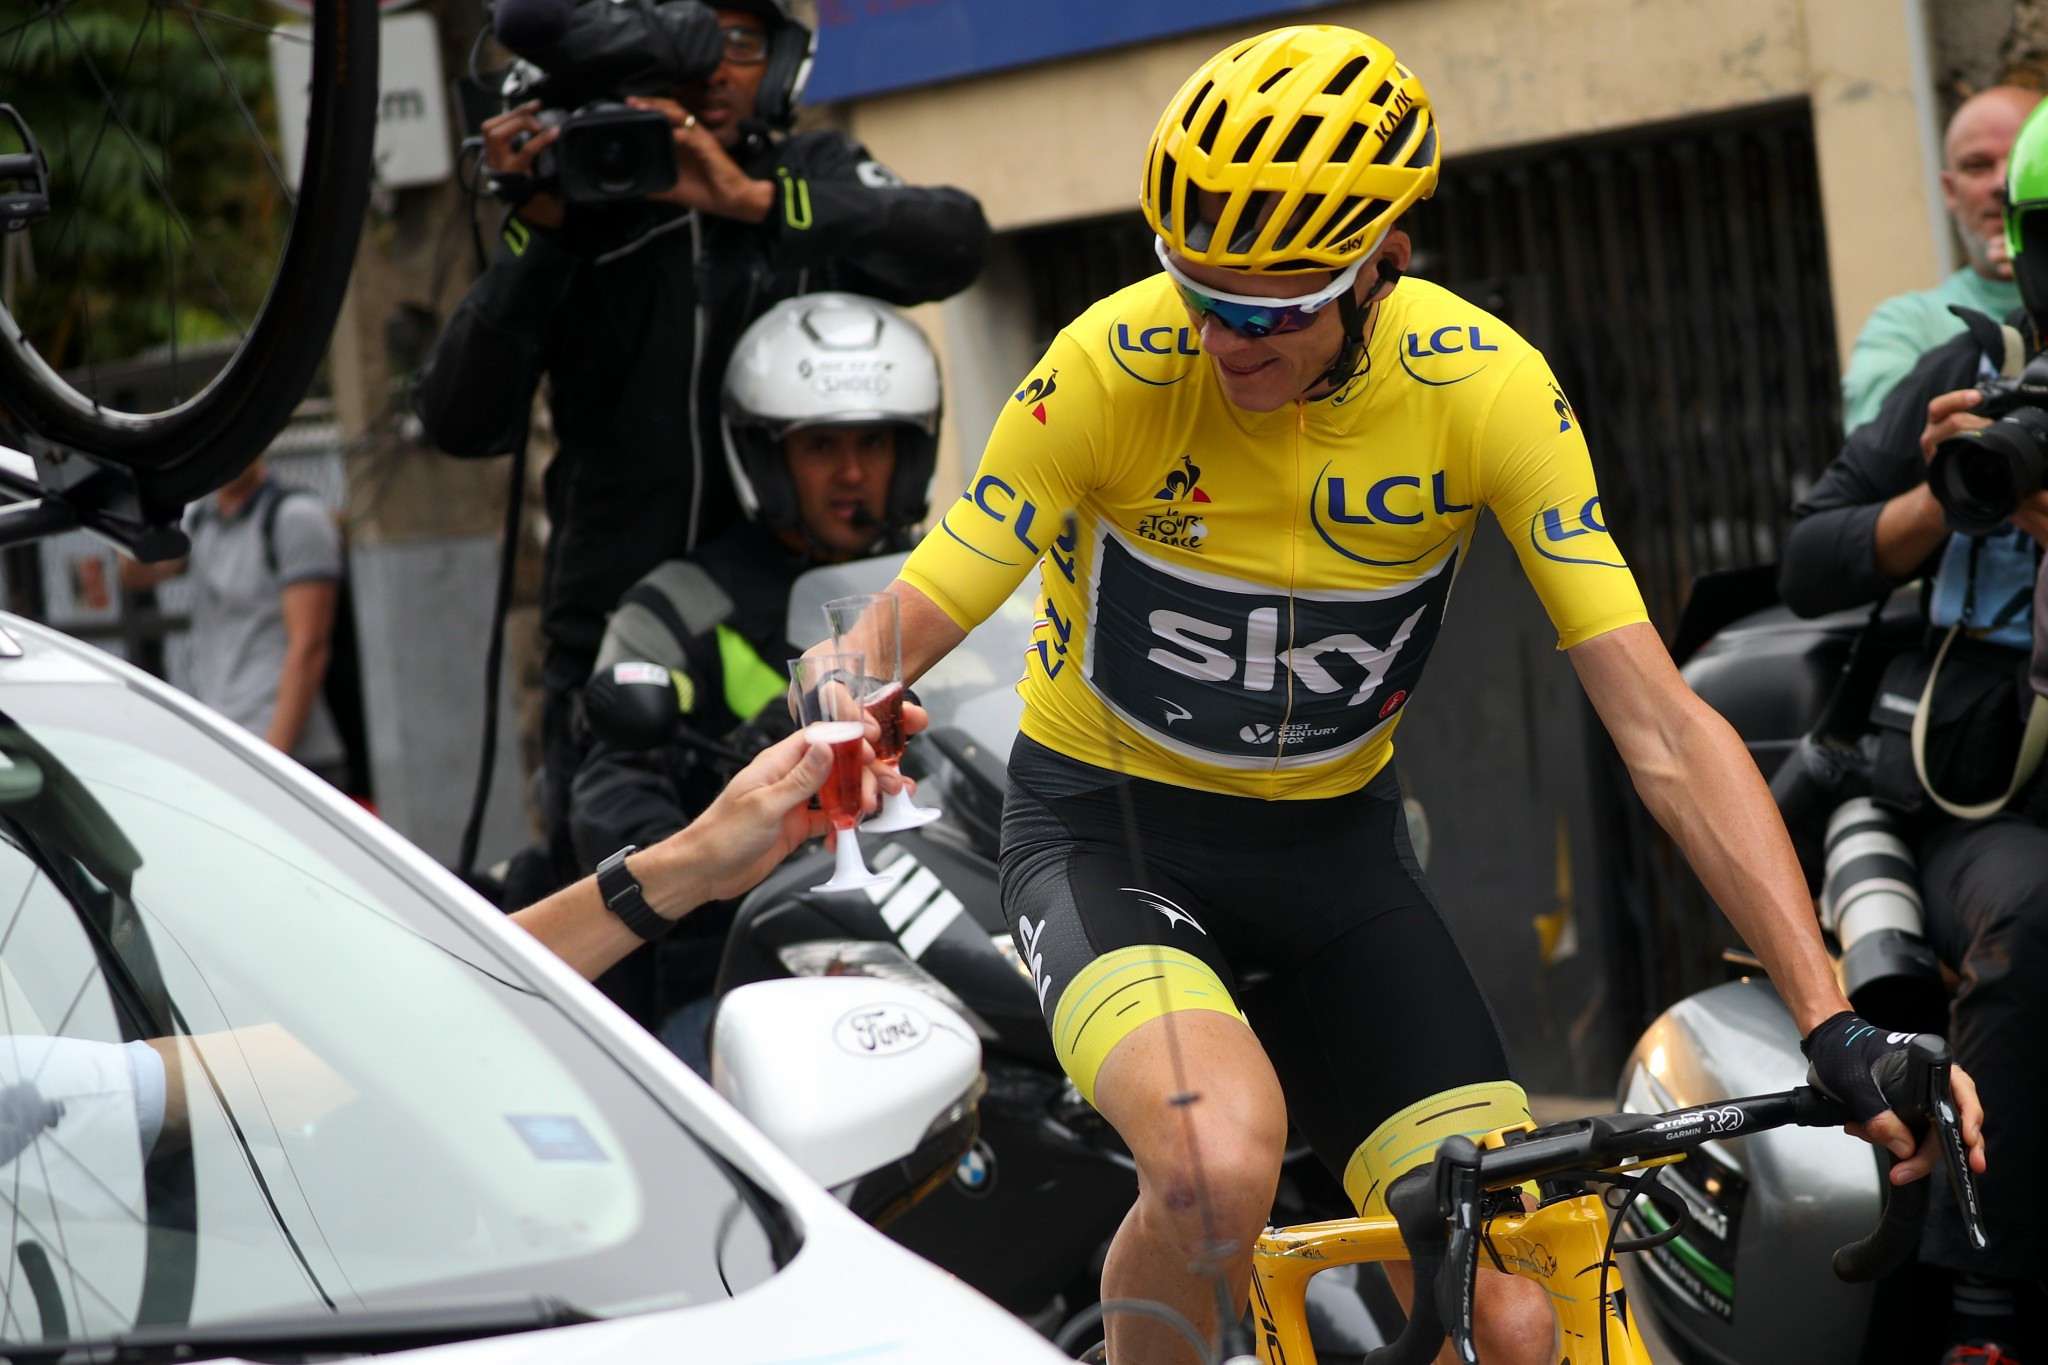 Froome eyes rare Tour de France and Vuelta a Espana double